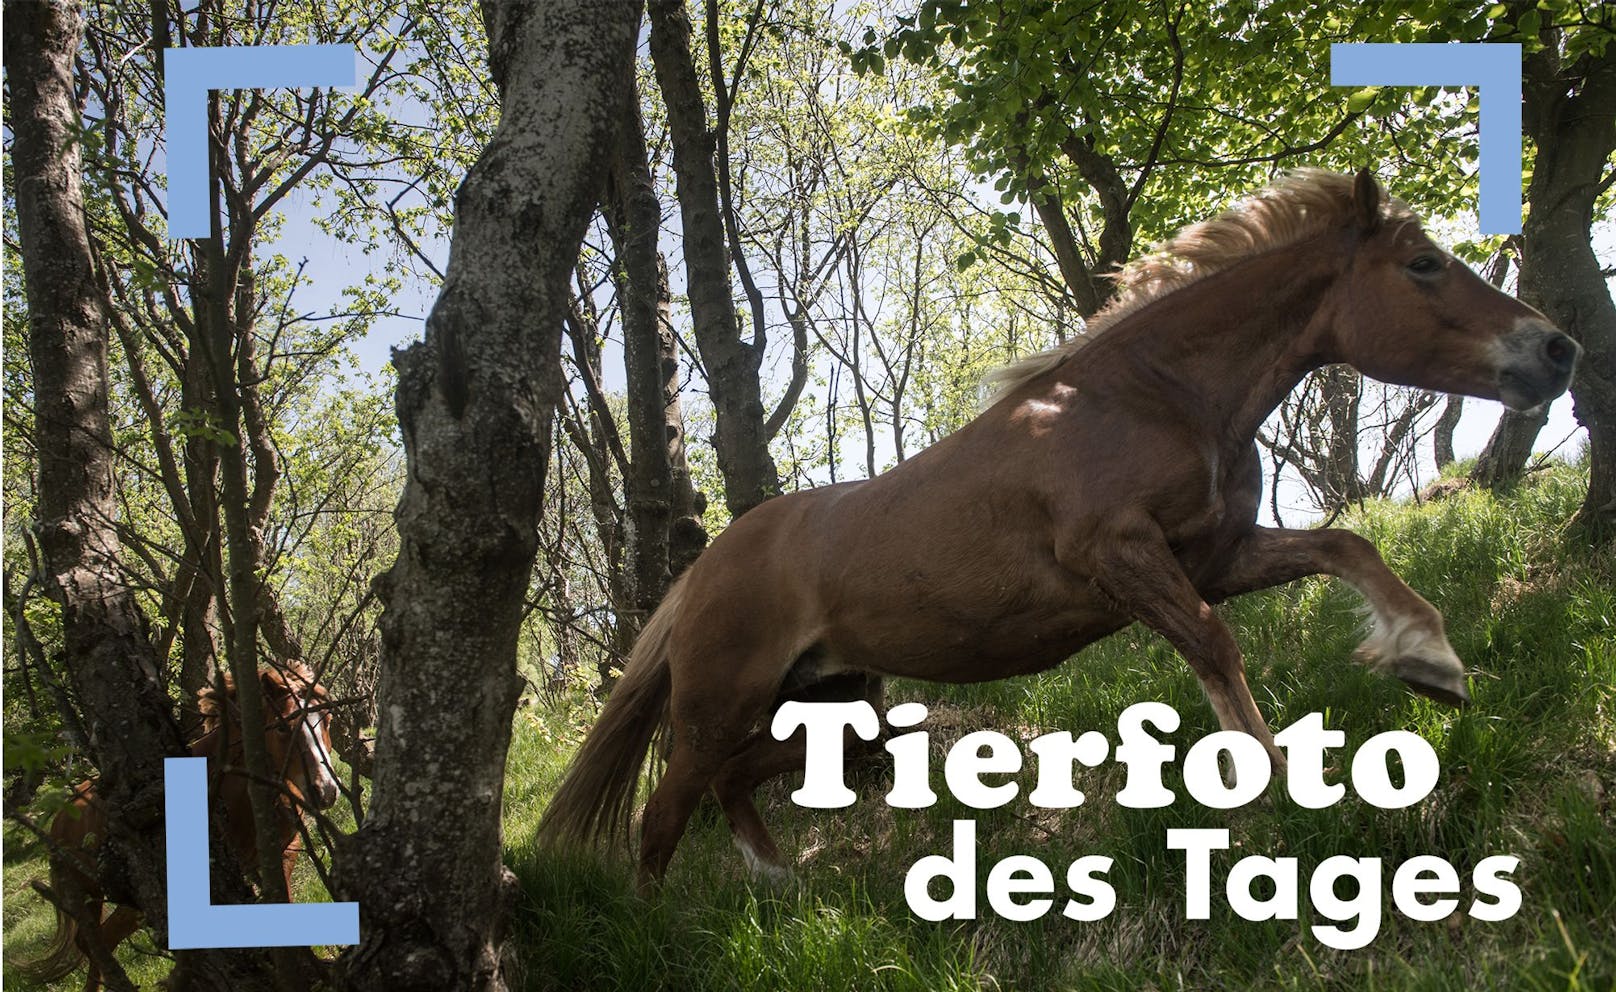 Während der Transhumanz der Bisbino-Pferde werden die Tiere am Mittwoch, 18. Mai 2022, auf die Weide in der Nähe des Monte Generoso, Tessin, Schweiz, entlassen, wo sie bis zum Herbst frei grasen können.